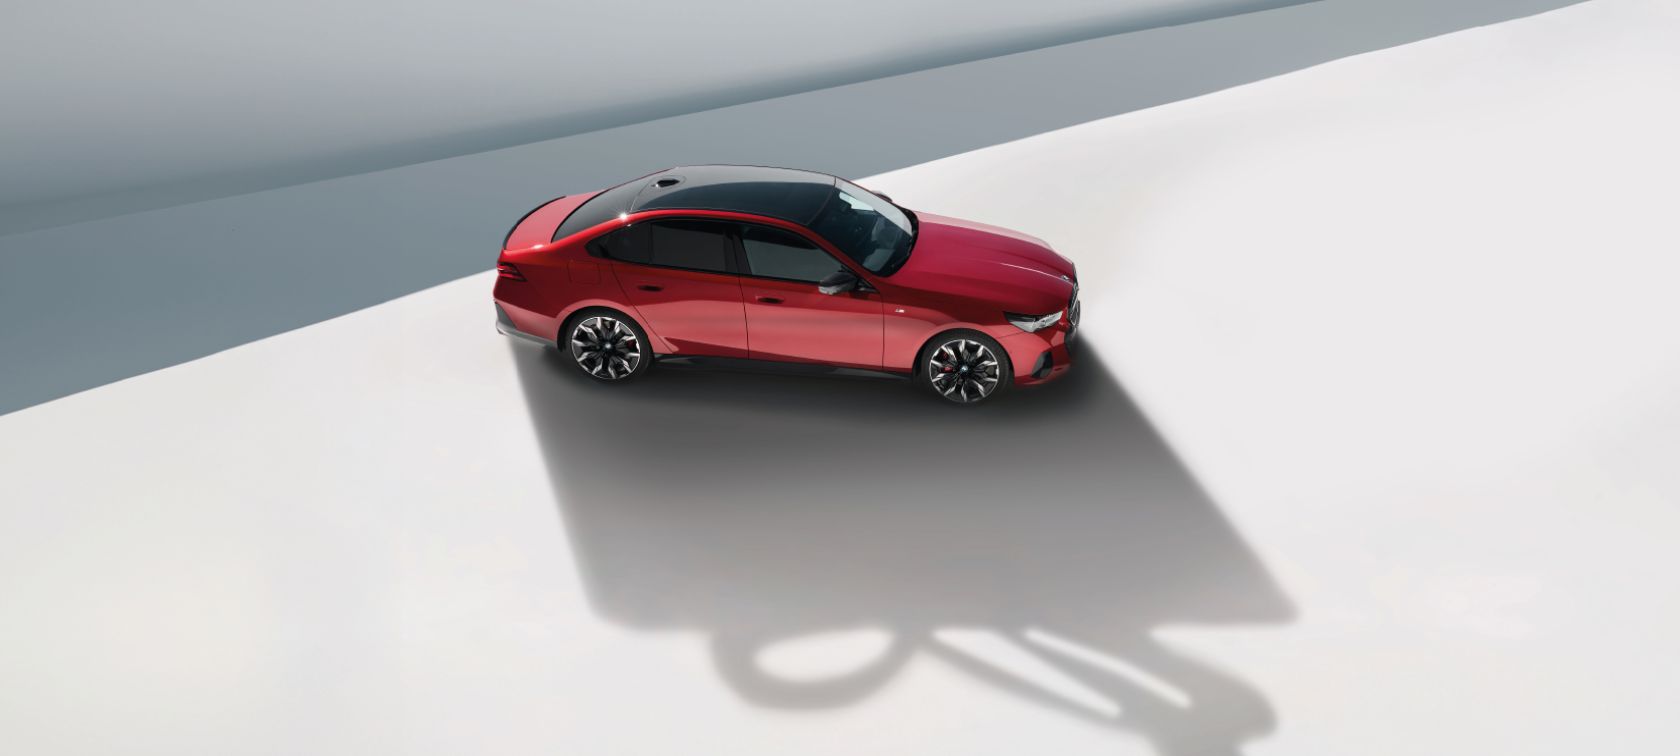 Wybierz nowe BMW z modeli dostępnych od ręki, które skrywa niespodzianke. Poznaj specjalną ofertę na koła zimowe.